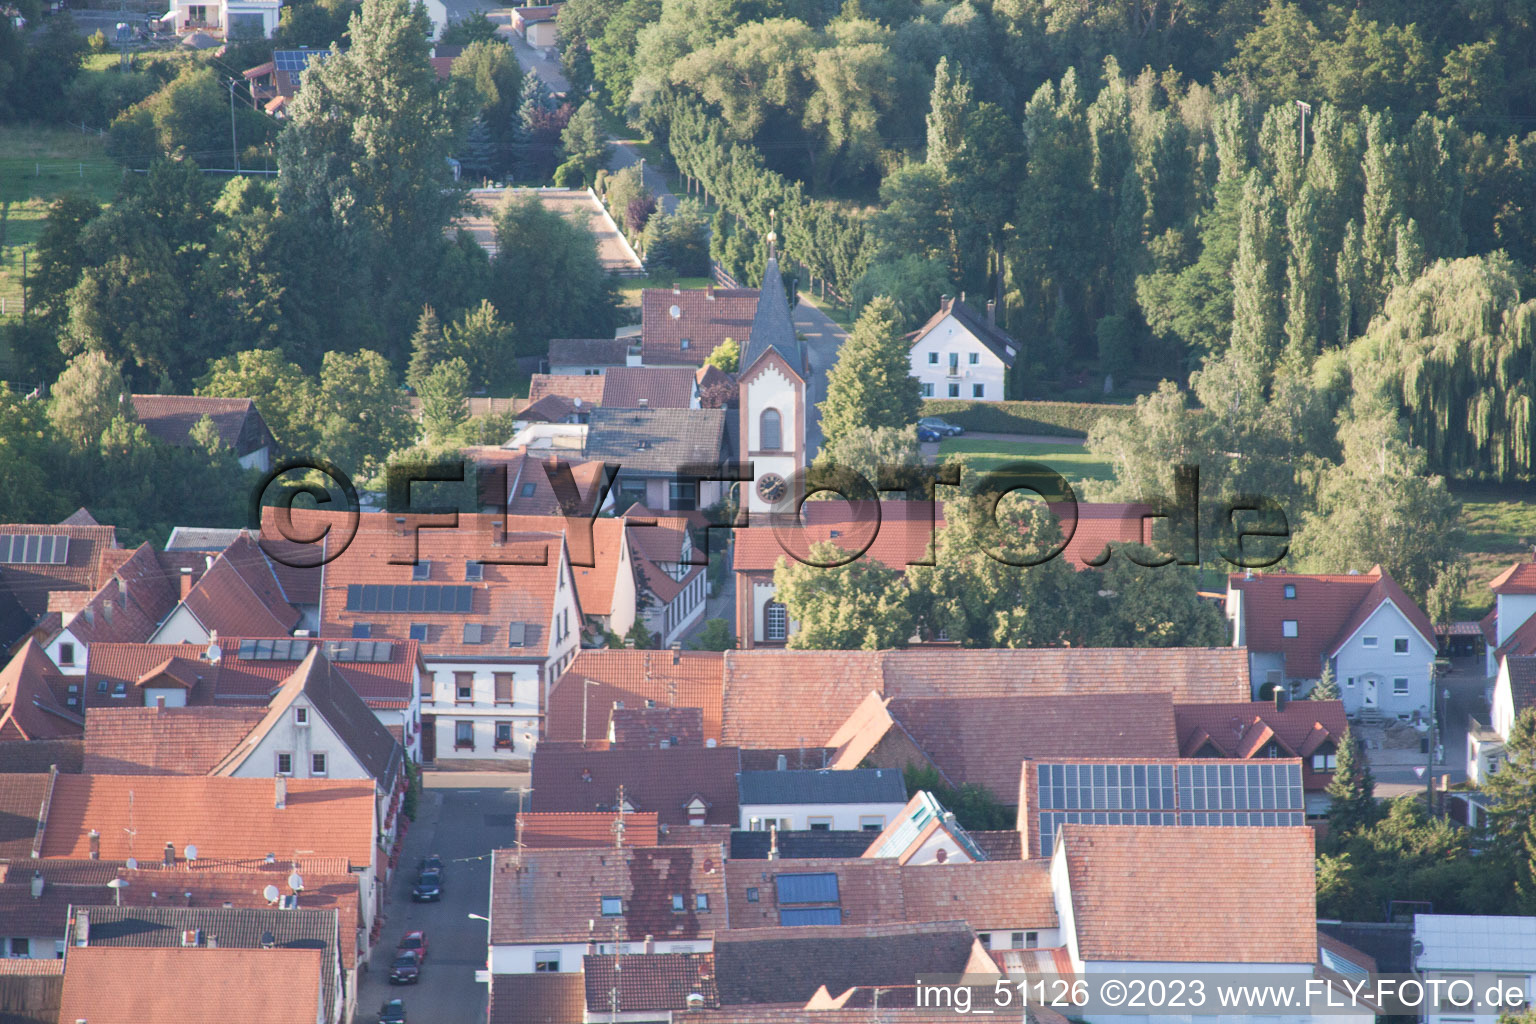 Aerial view of District Mühlhofen in Billigheim-Ingenheim in the state Rhineland-Palatinate, Germany